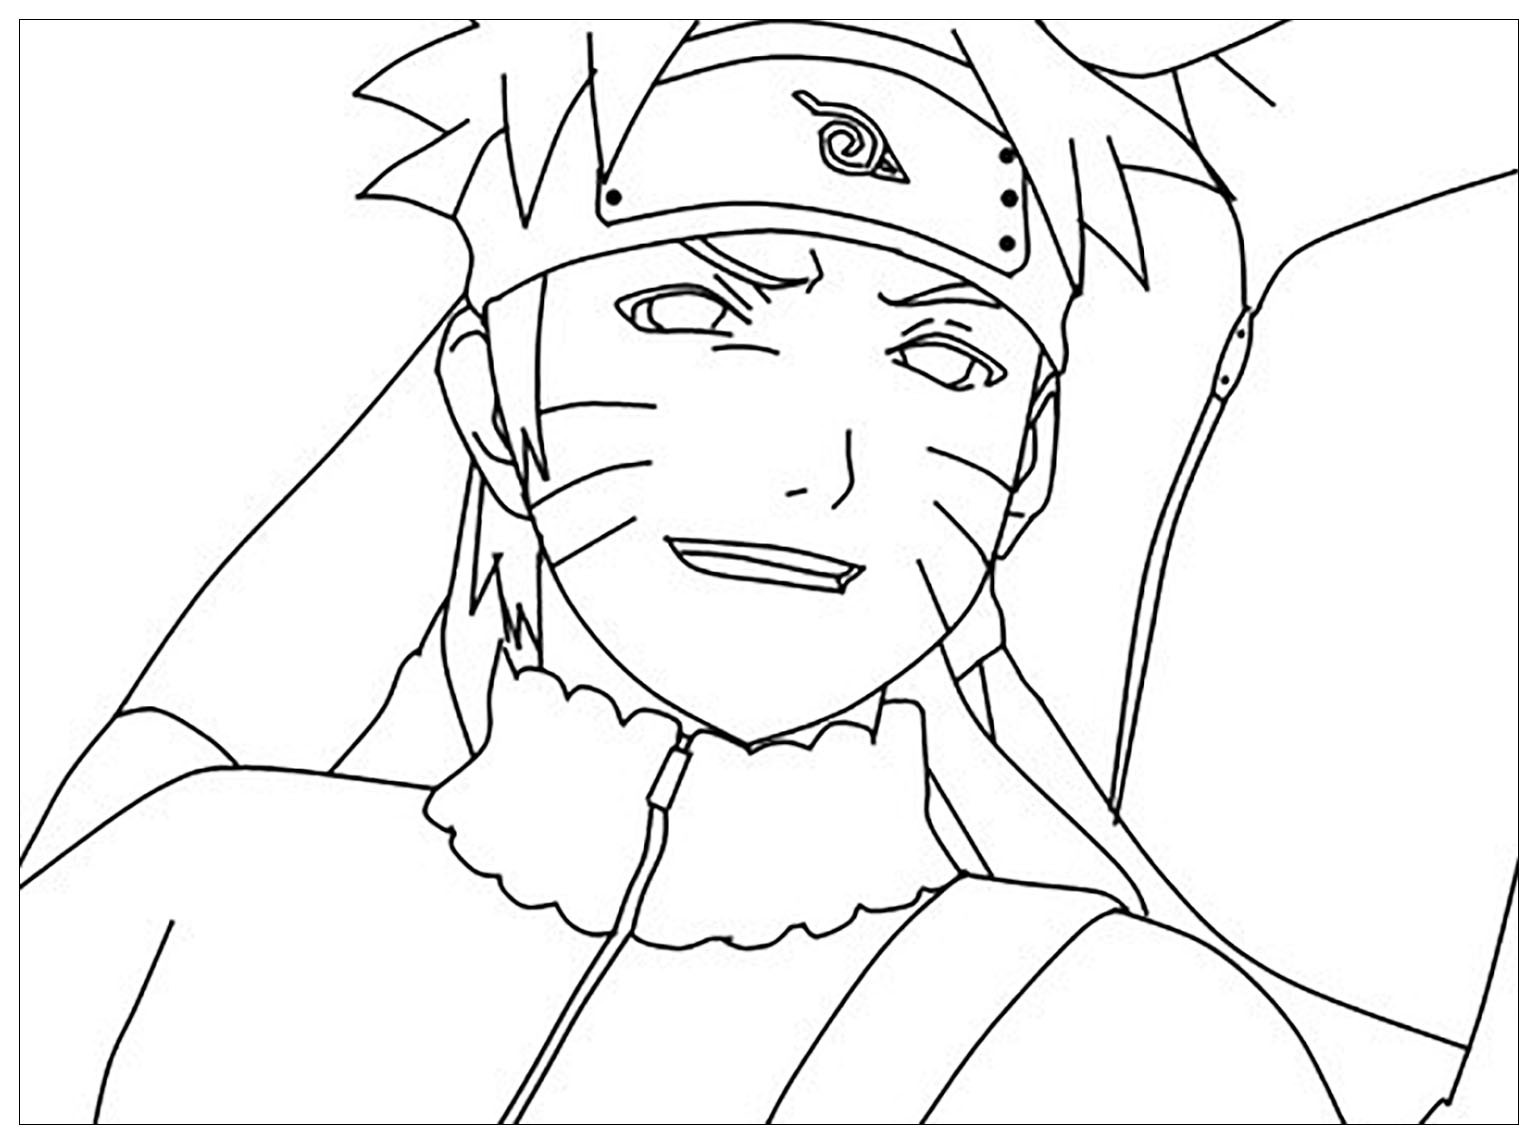 ¡Naruto te sonríe!